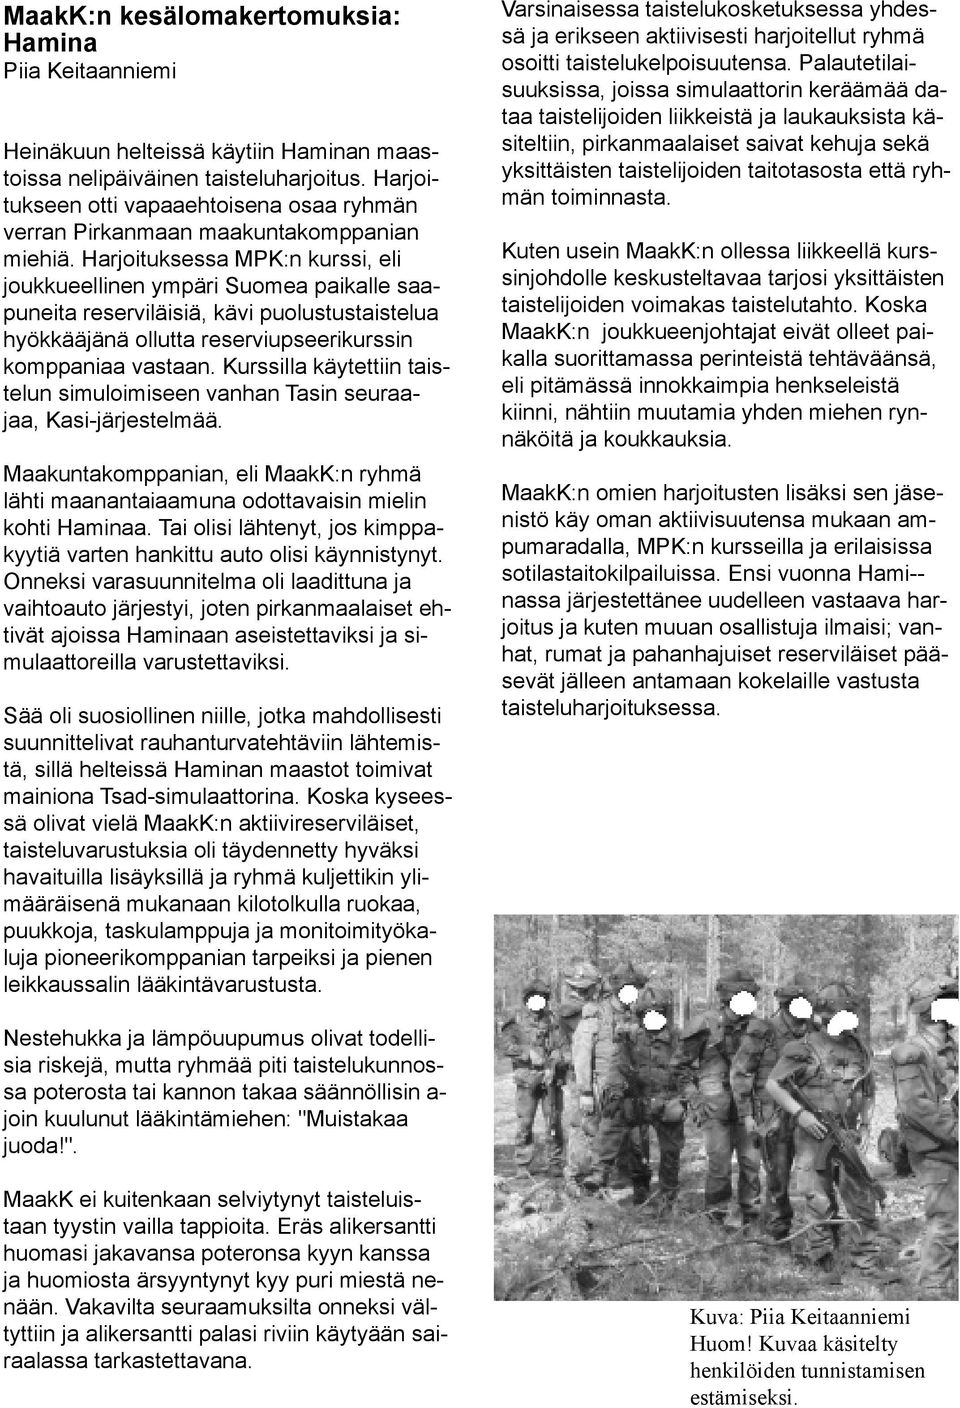 Harjoituksessa MPK:n kurssi, eli joukkueellinen ympäri Suomea paikalle saapuneita reserviläisiä, kävi puolustustaistelua hyökkääjänä ollutta reserviupseerikurssin komppaniaa vastaan.